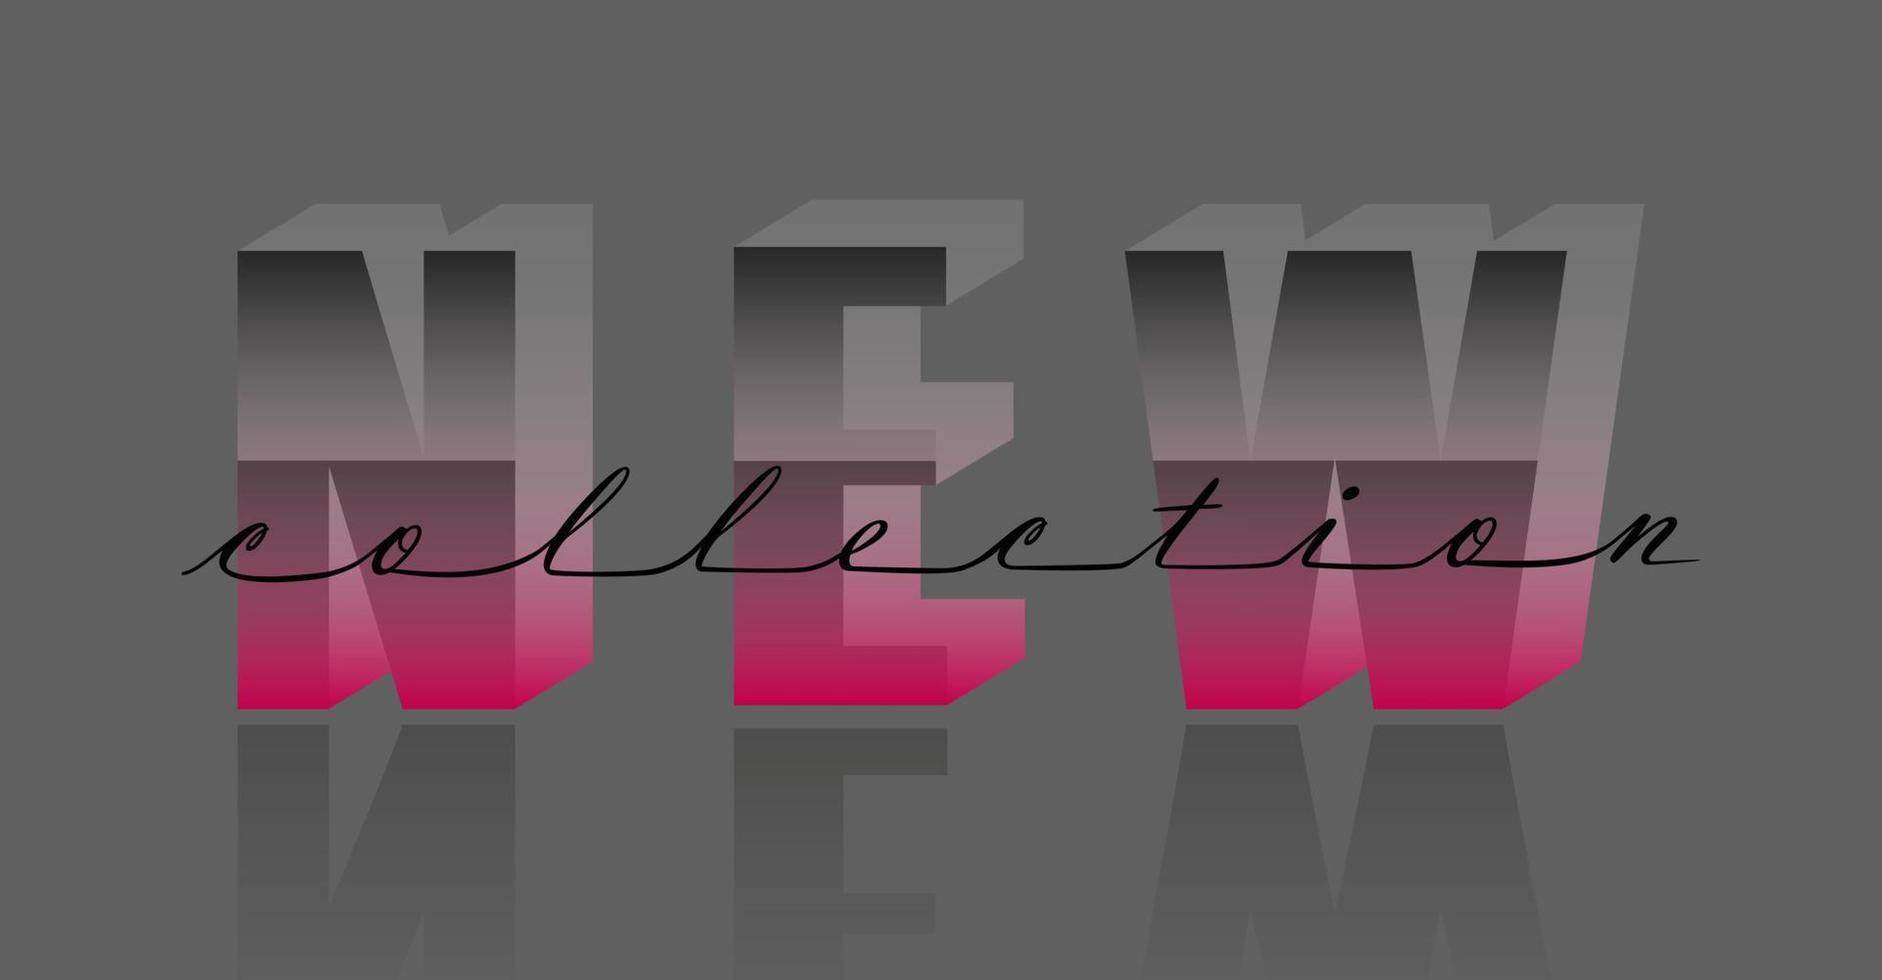 nuova collezione di lettere vettoriali in linea continua. calligrafia scritta a mano con slogan moderno. carattere 3d grigio e rosa. design di moda glamour per social media, banner, etichette, carte, modello di stampa poster.